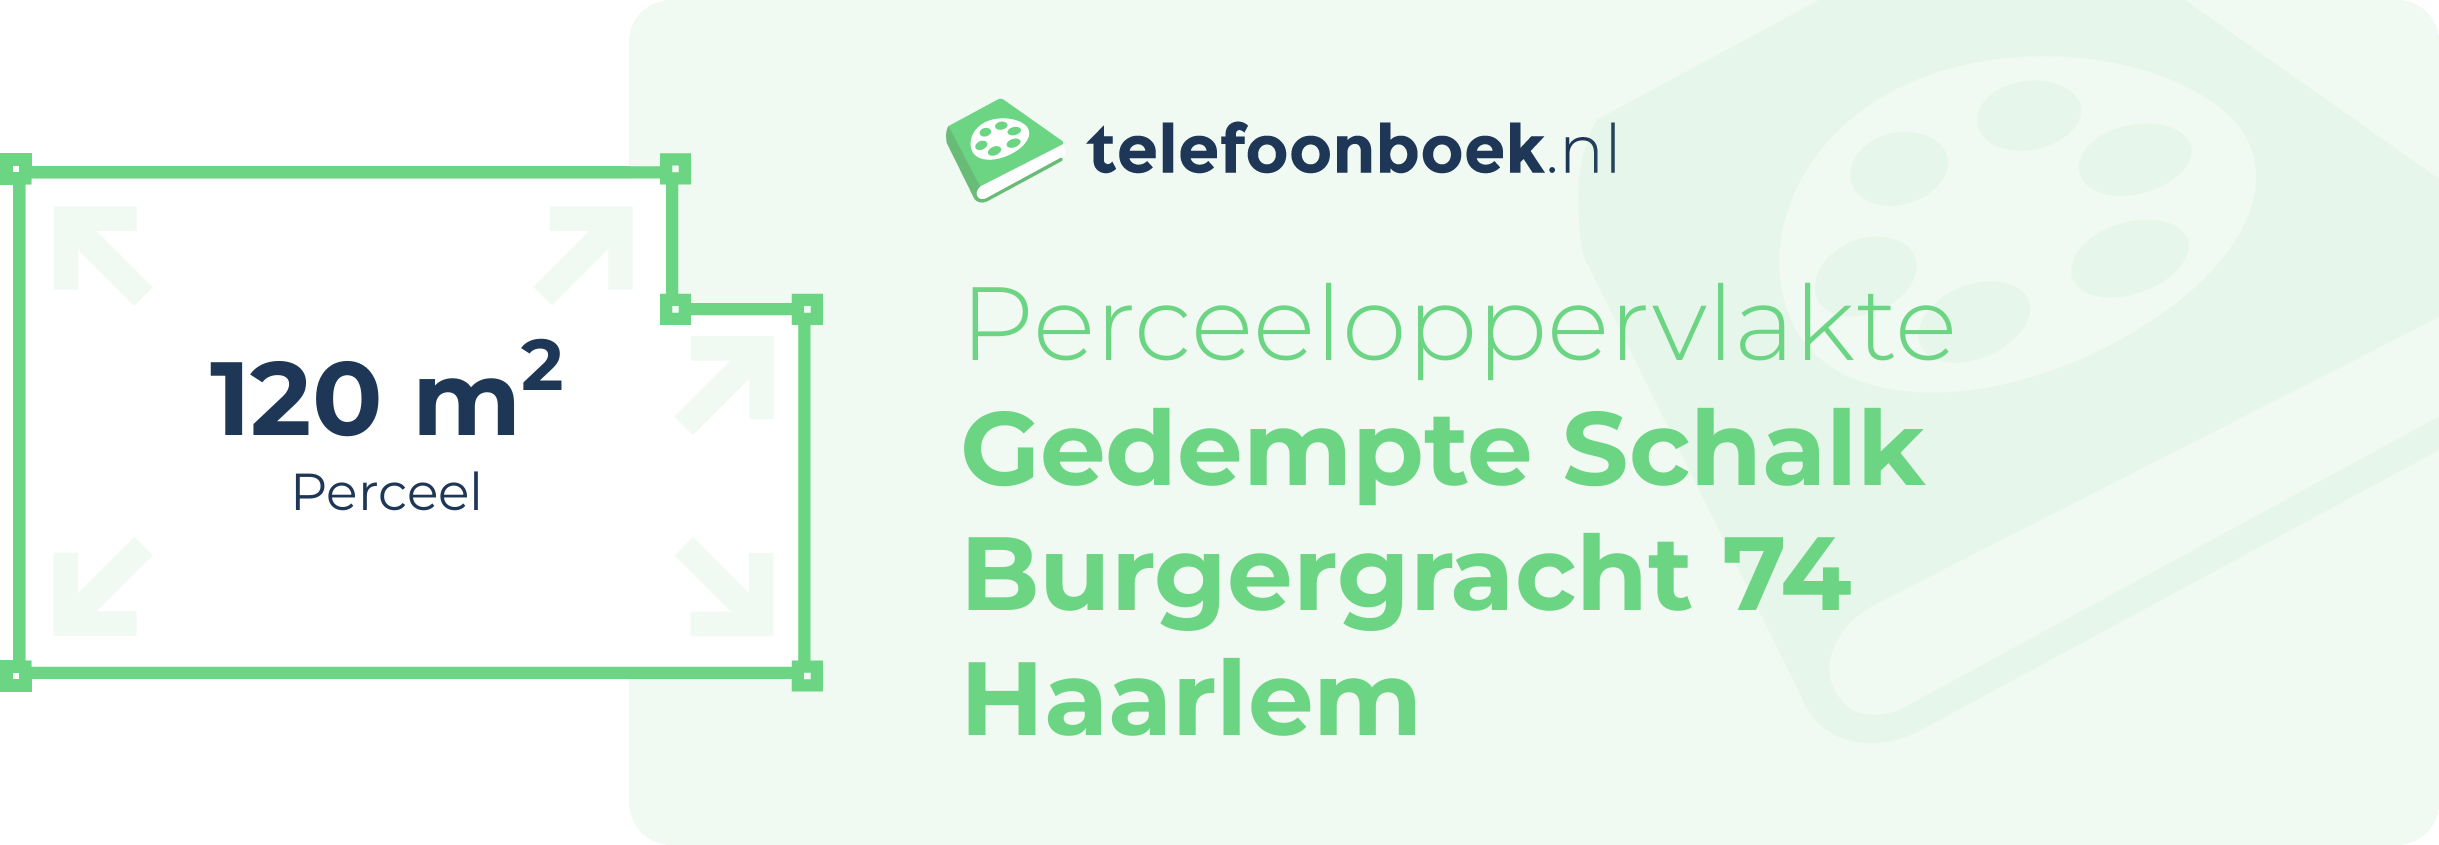 Perceeloppervlakte Gedempte Schalk Burgergracht 74 Haarlem